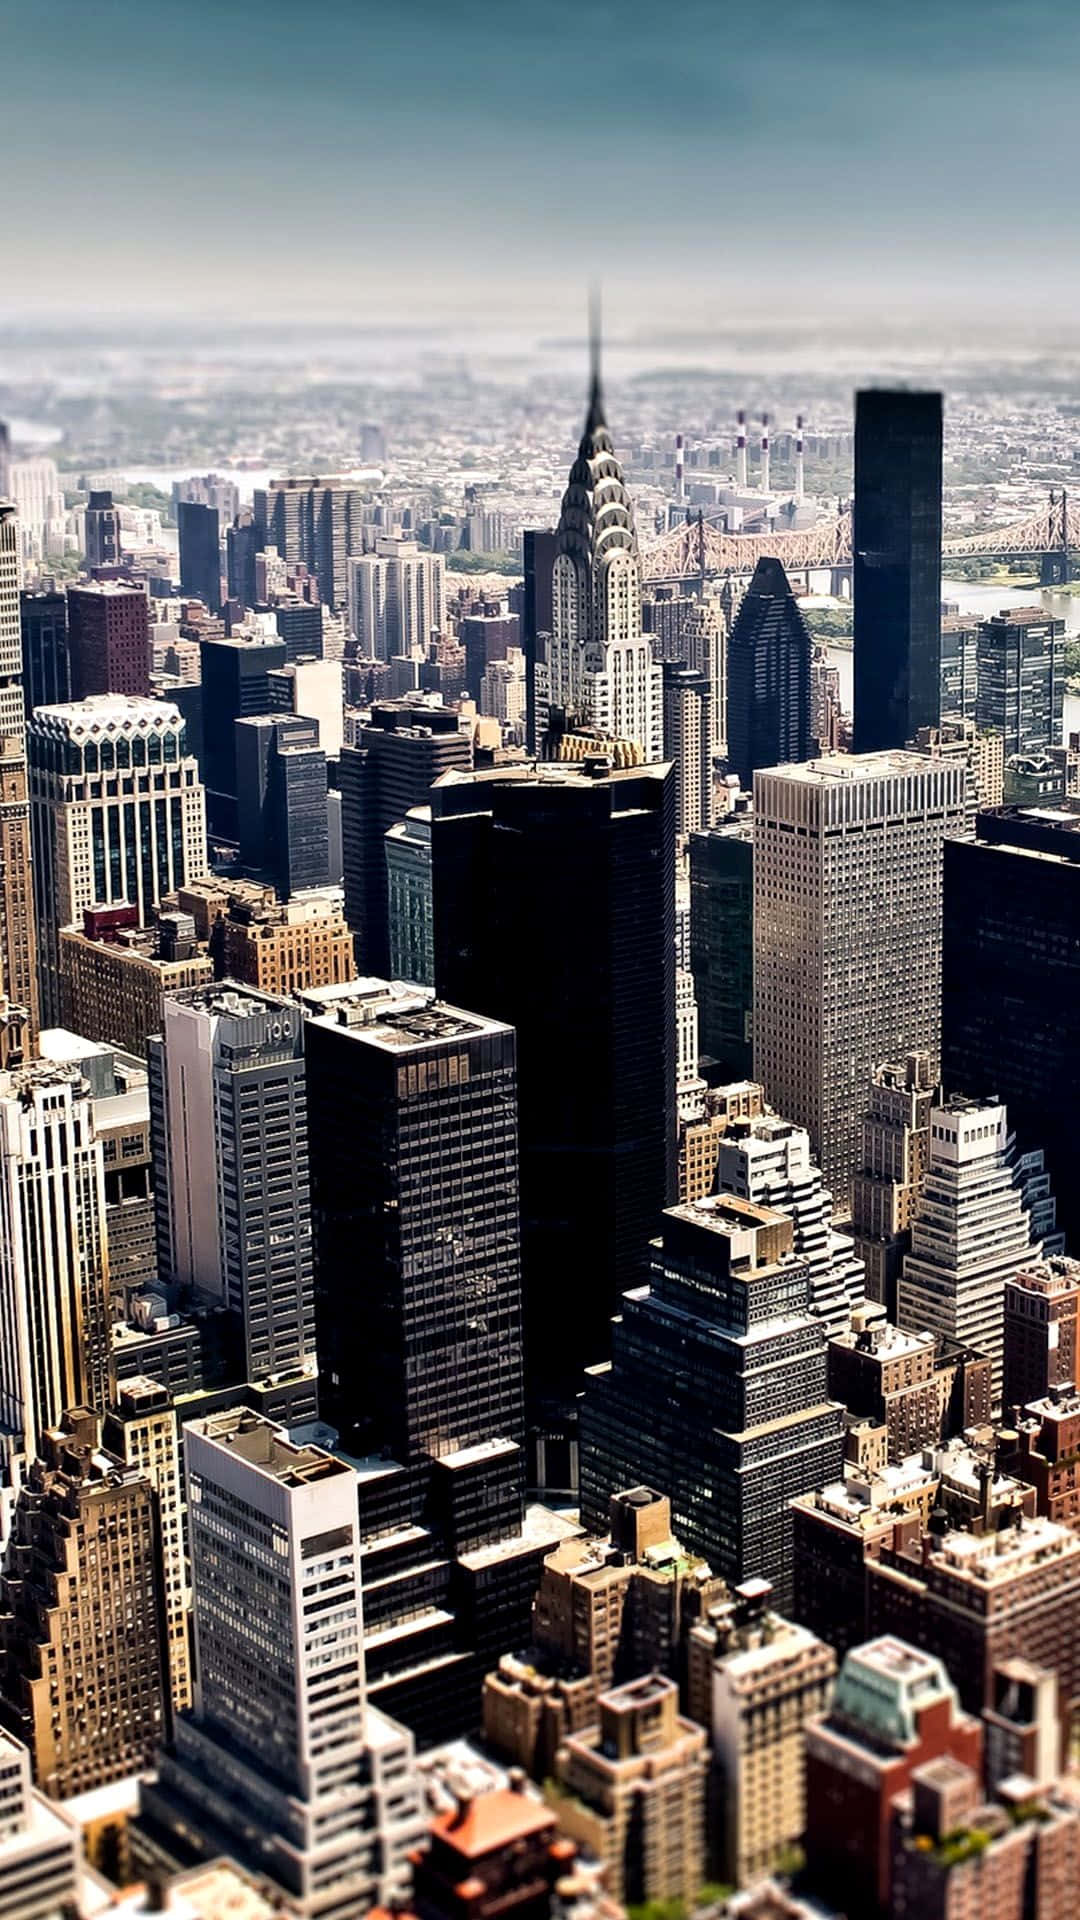 Nyd de uendelige muligheder i New York City med den fantastiske Iphone Xs!